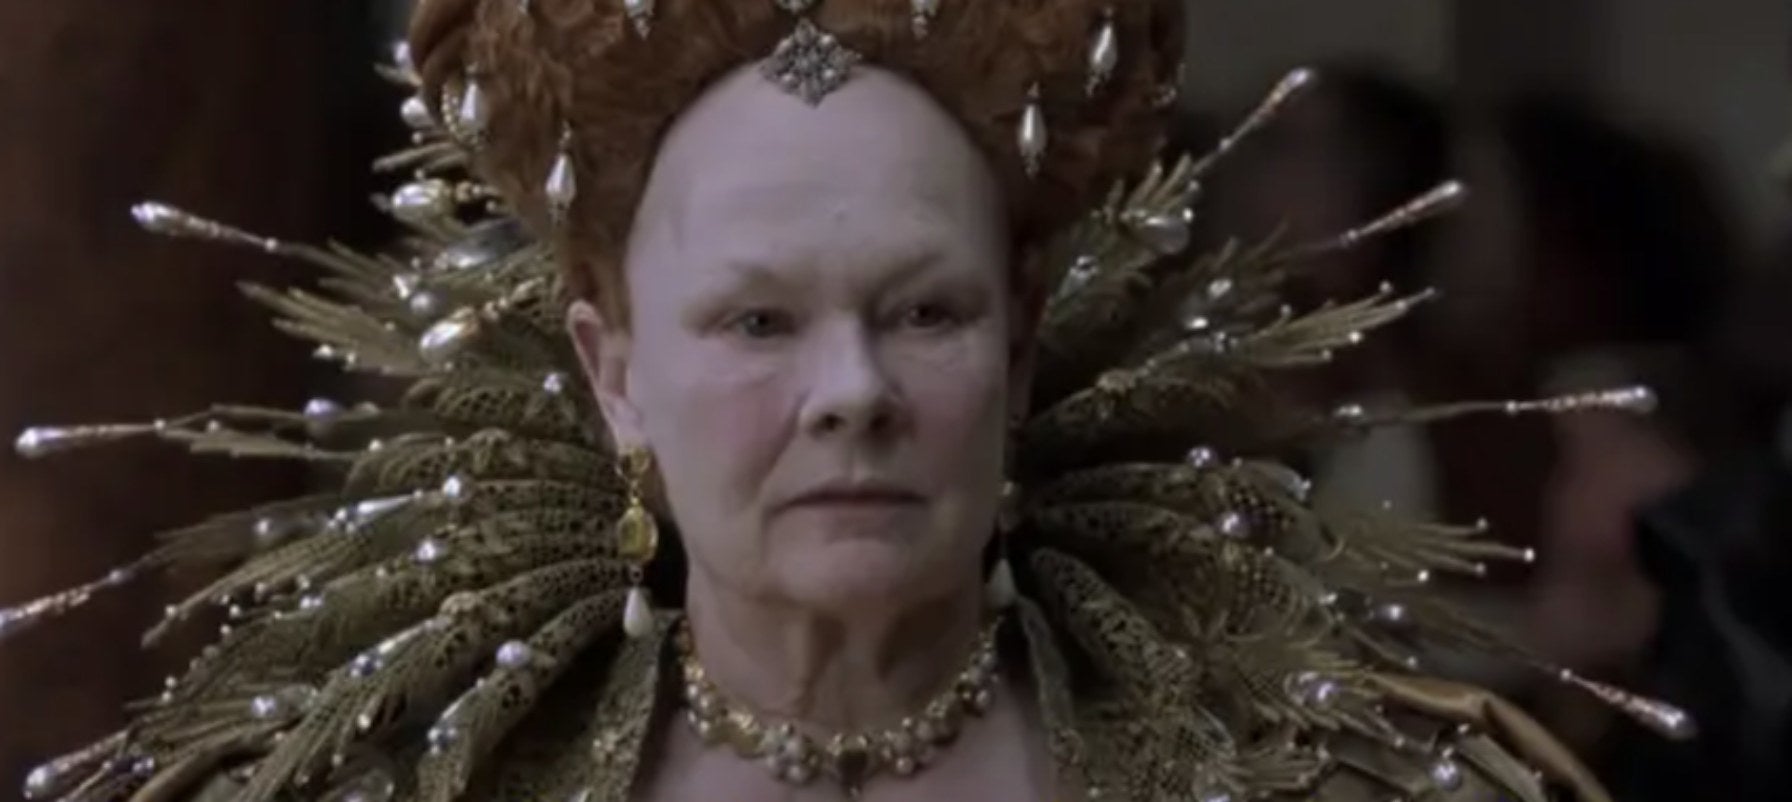 Judi Dench as Queen Elizabeth